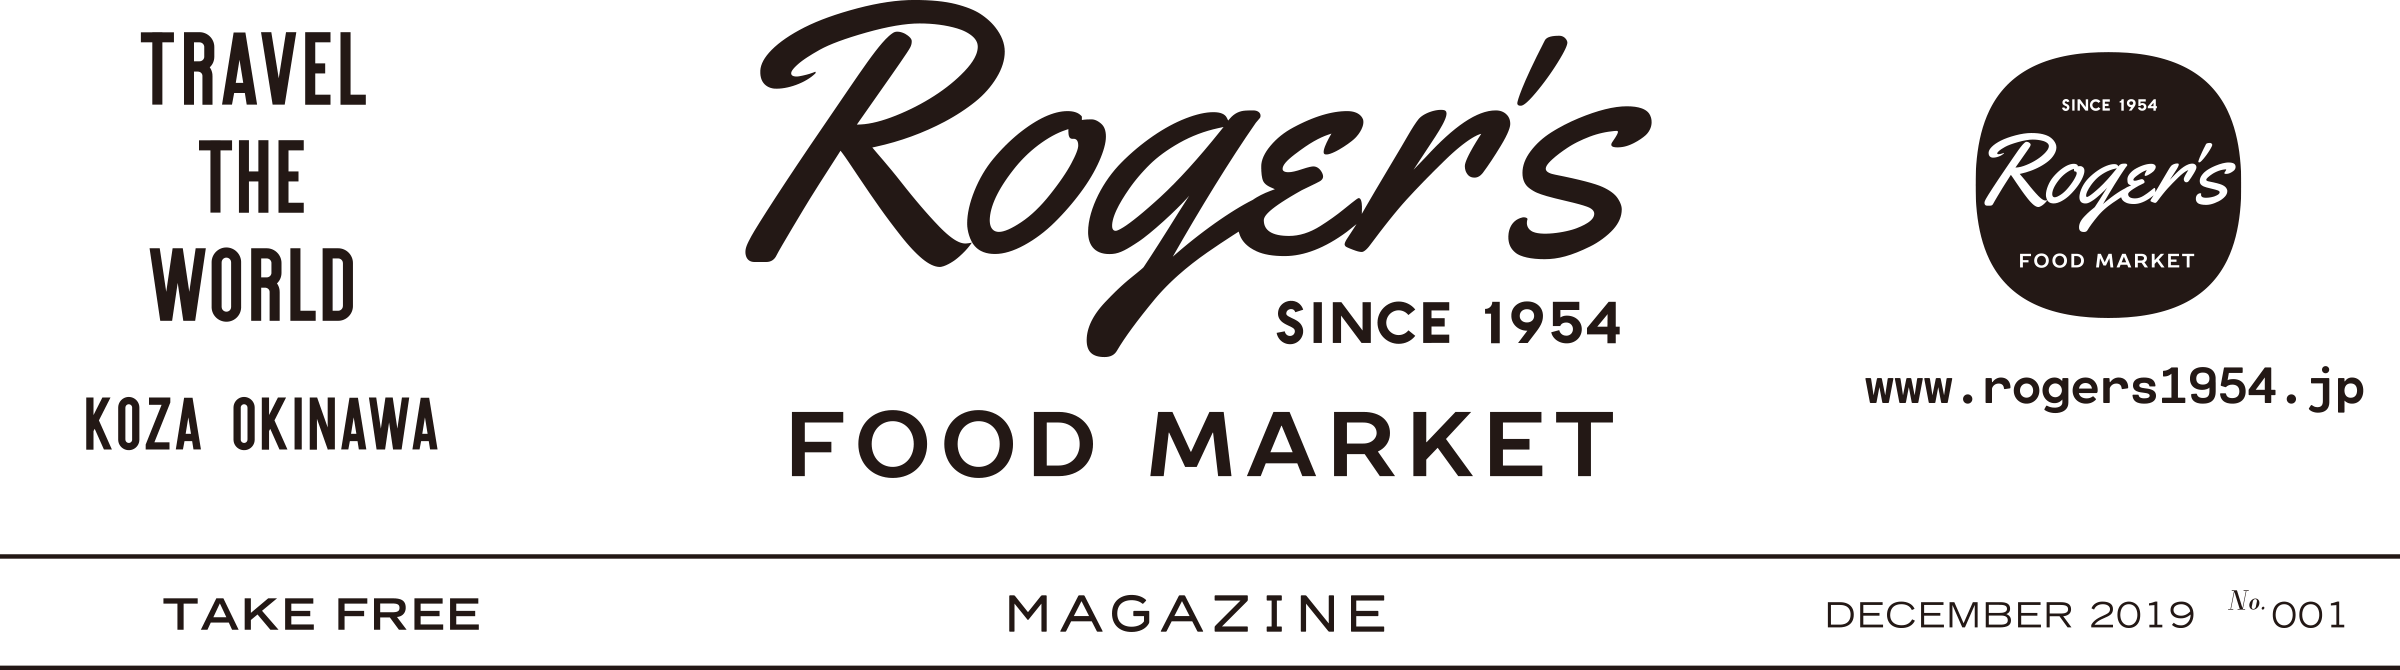 Roger's FOOD MARKET